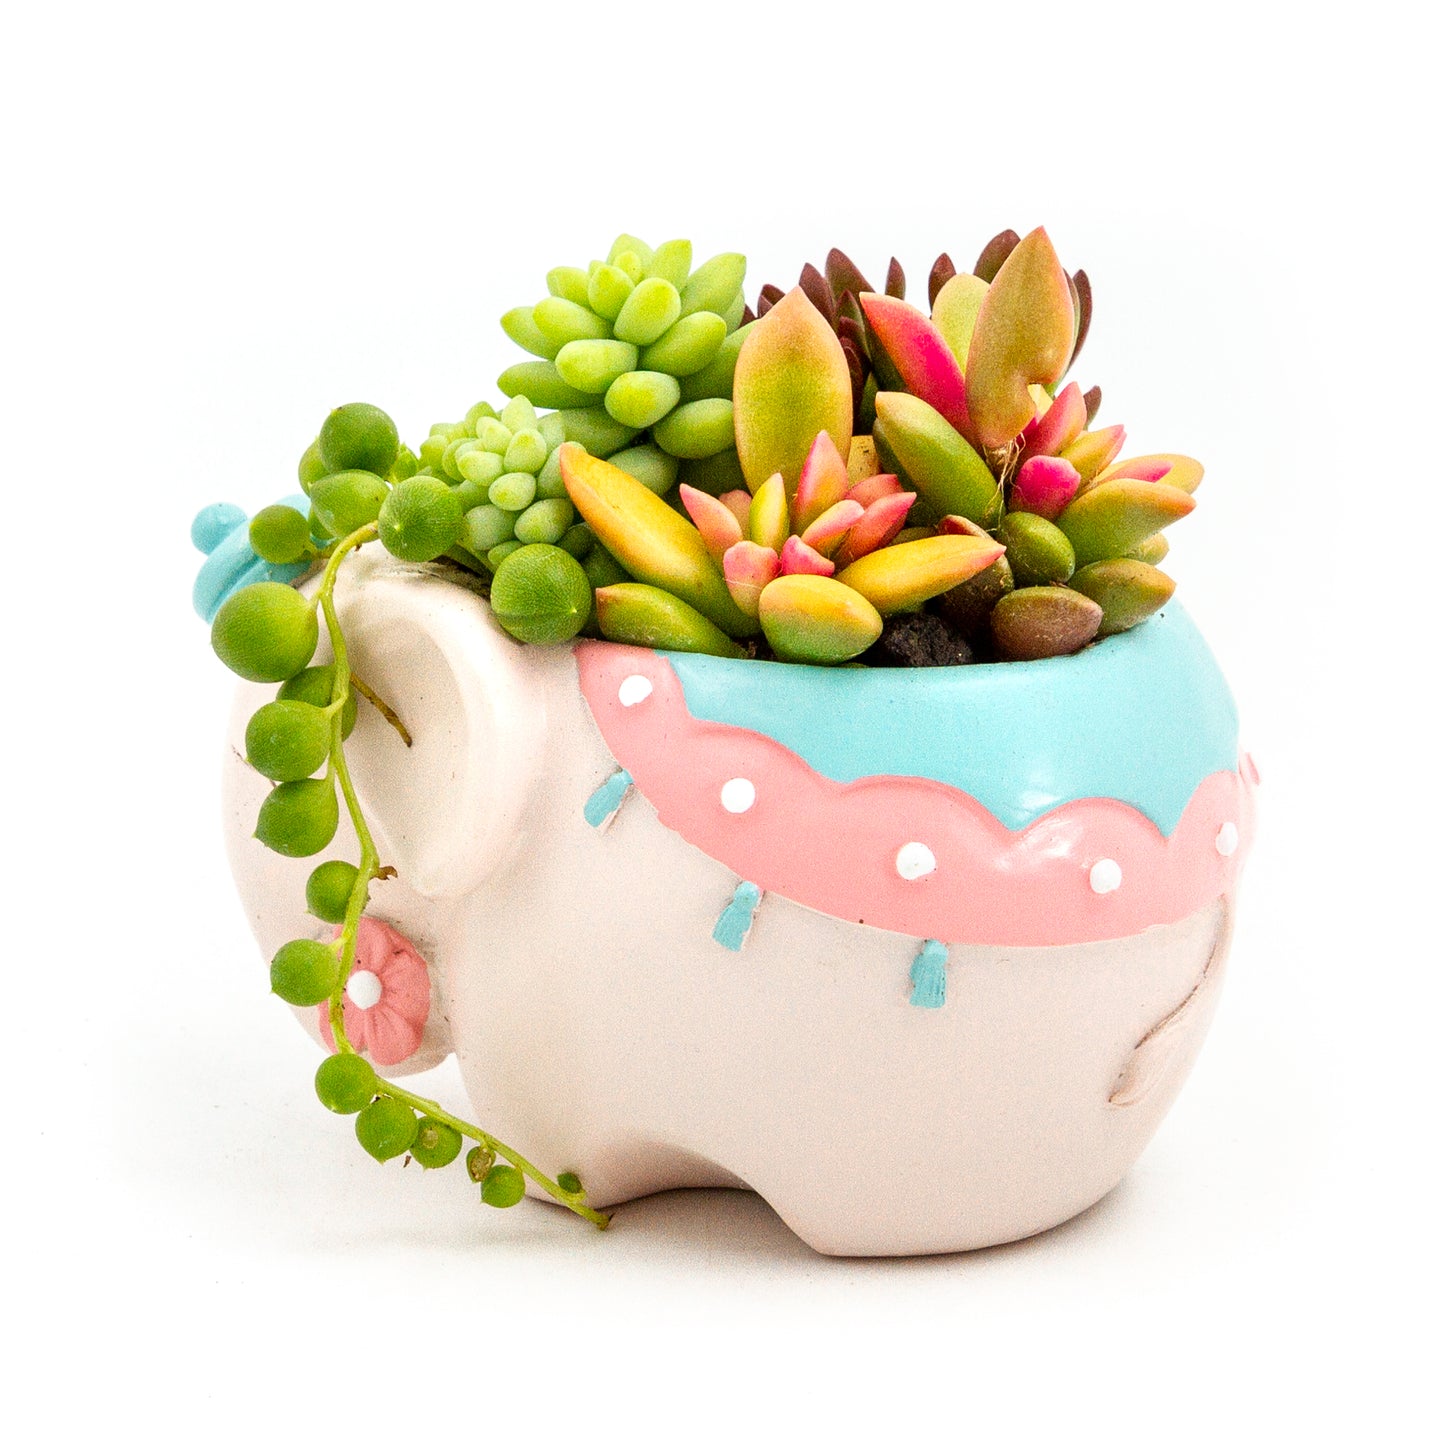 Succulent Arrangement in Colorful Elephant Pot